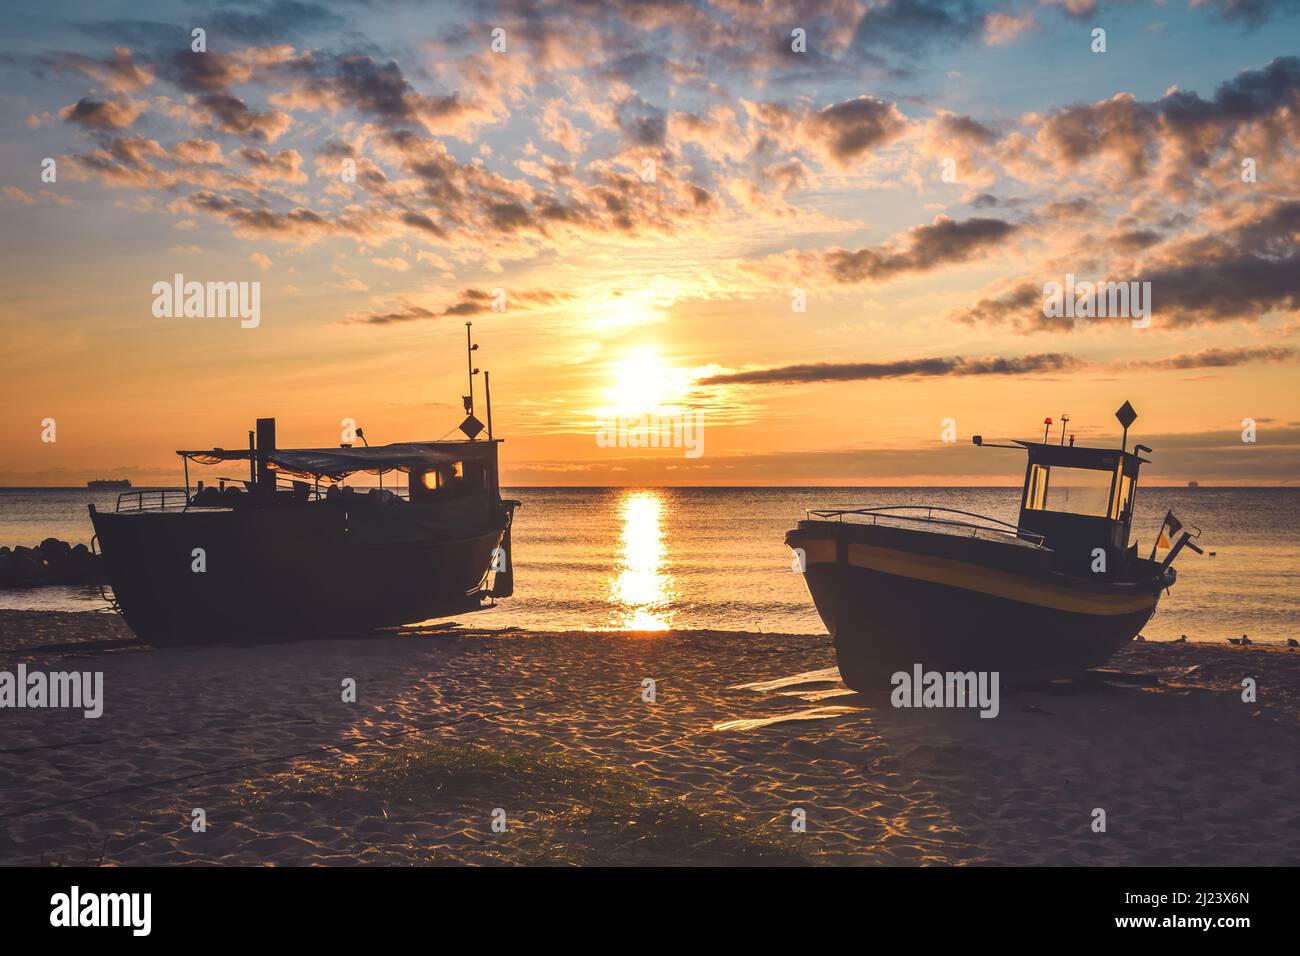 Schöner Morgenblick an der polnischen Küste in Gdynia. Schiffe am Morgen auf einem Sandstrand. Stockfoto